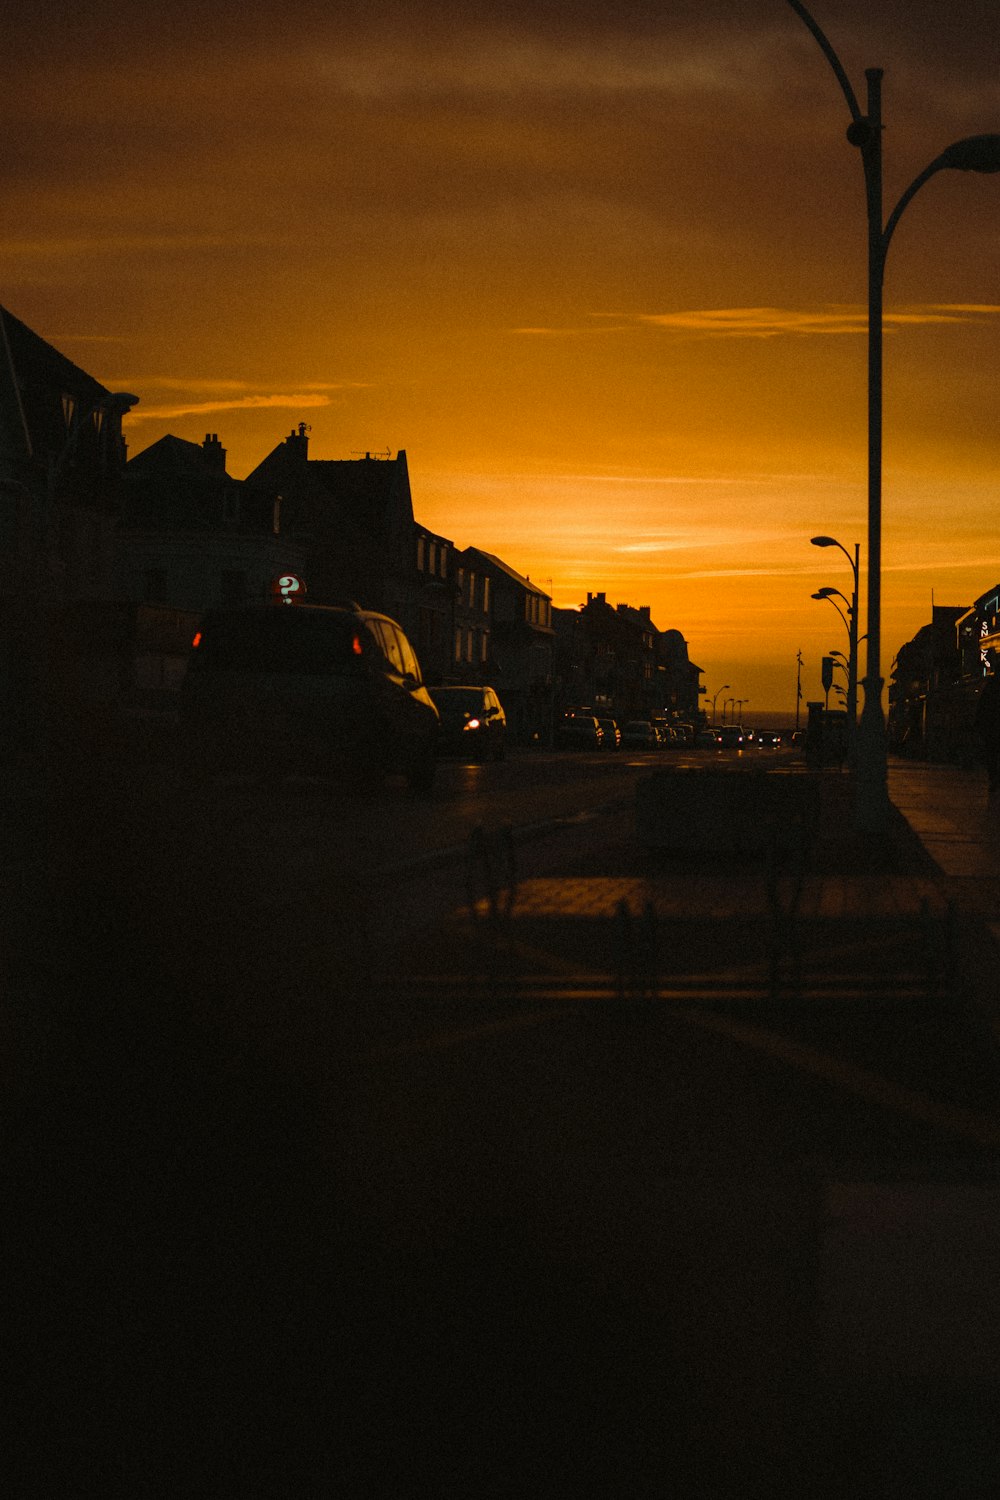 auto parcheggiate sul ciglio della strada durante il tramonto